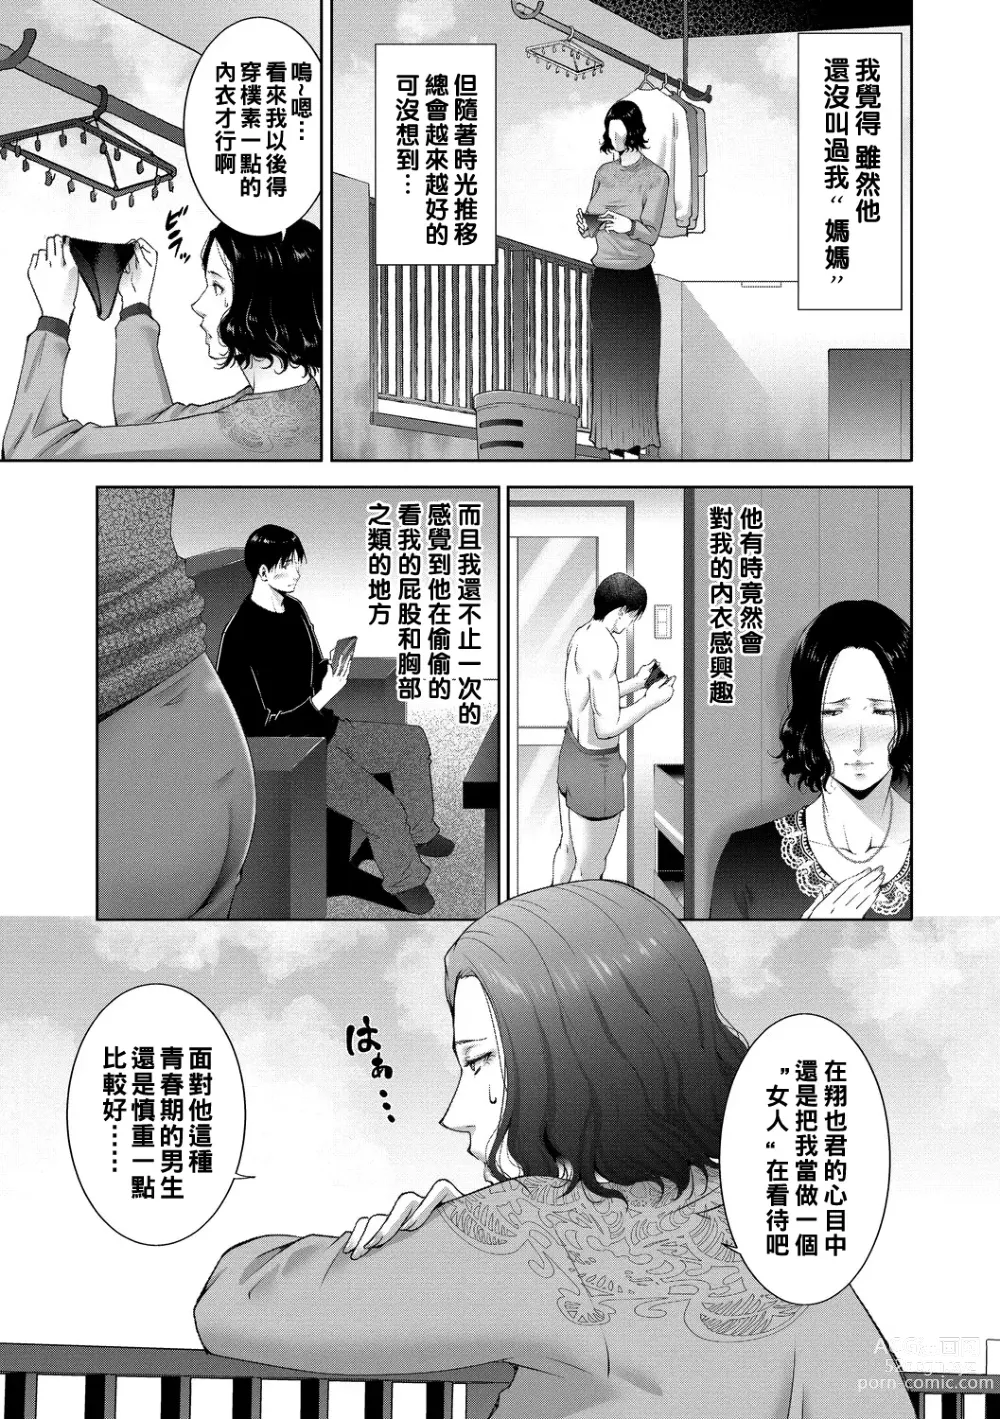 Page 3 of manga Gibosei